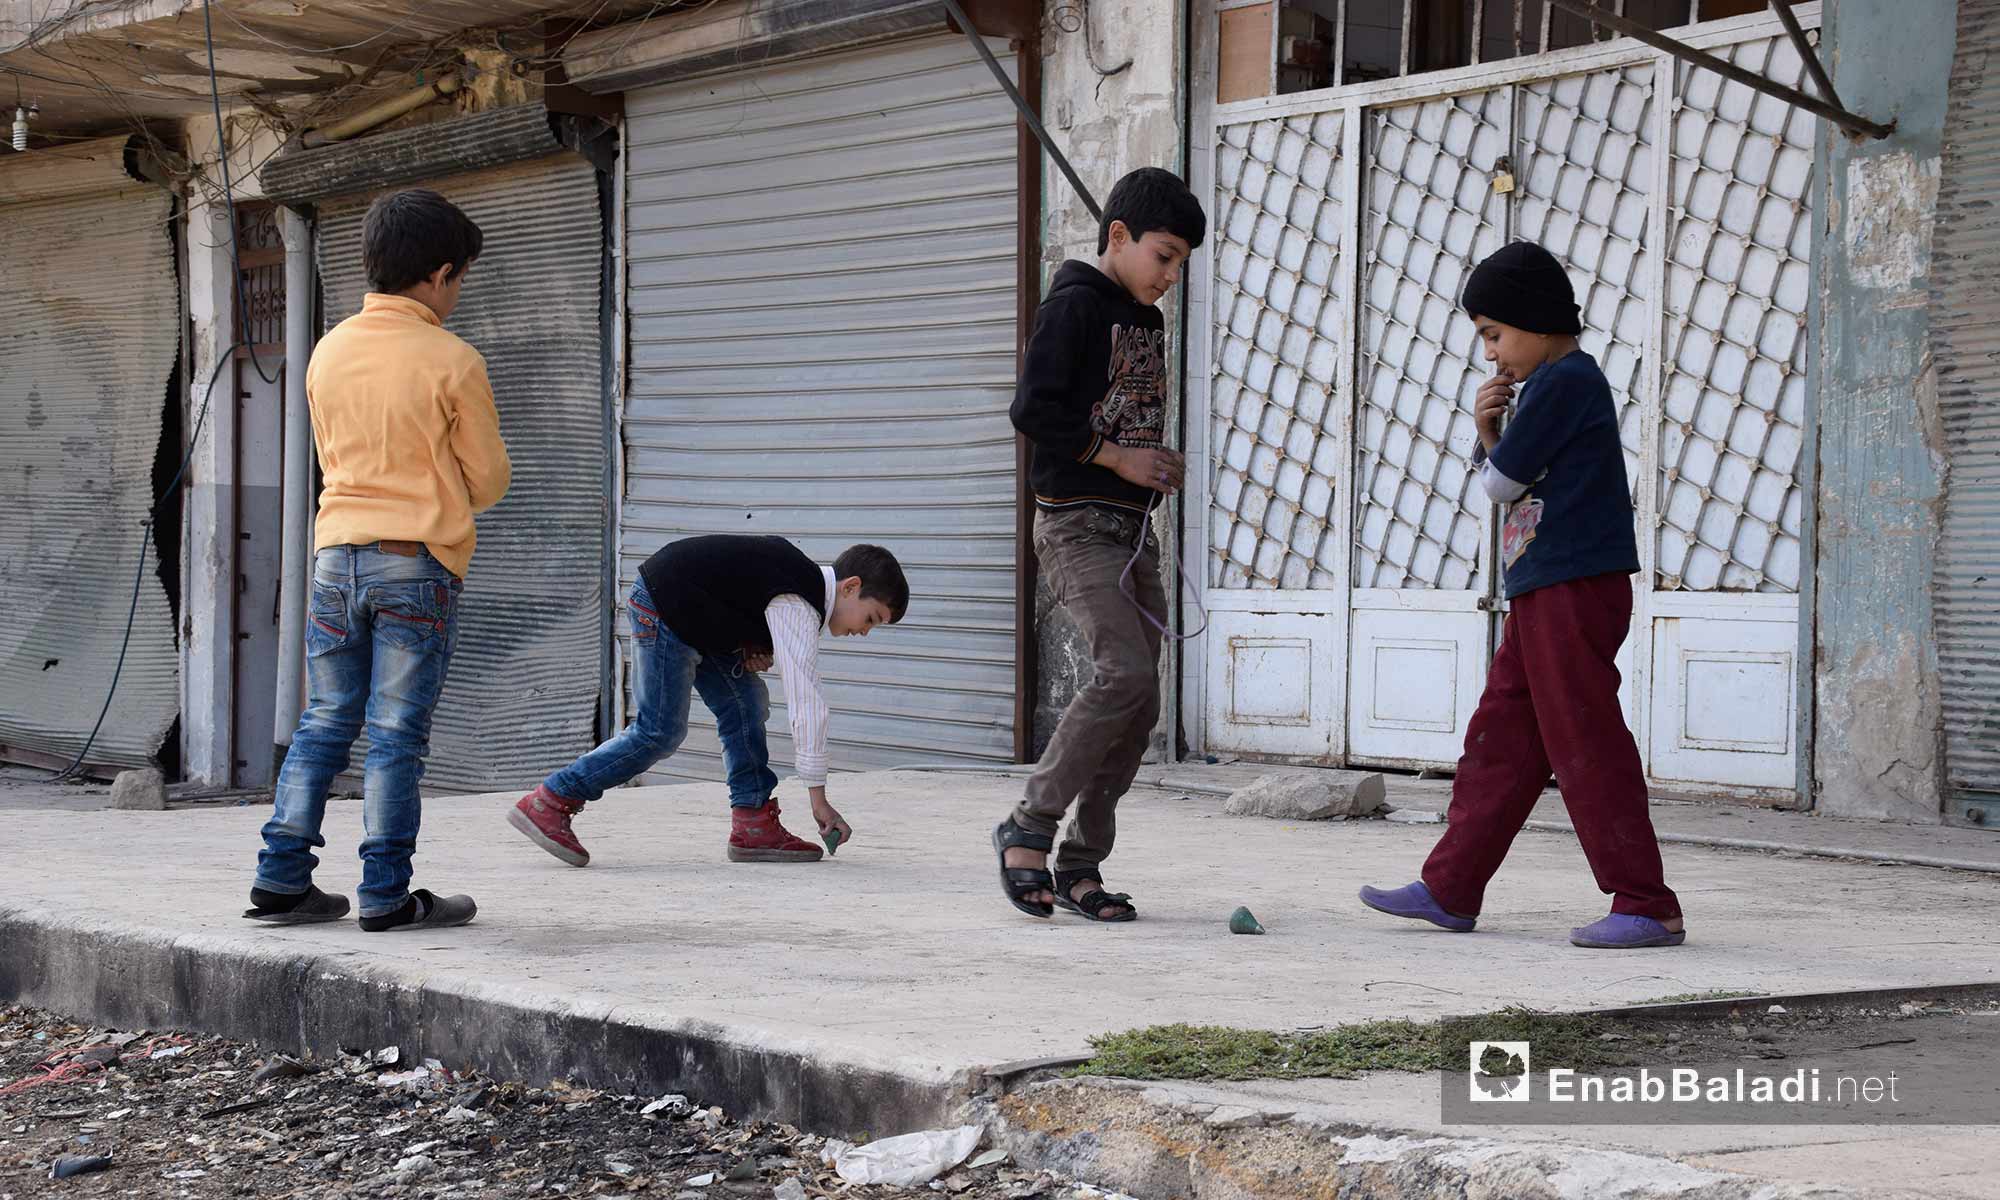 مراسل عنب بلدي في مدينة حلب التقط صورًا للأطفال، الاثنين 21 تشرين الثاني، في حي القاطرجي أثناء تغطيته القصف على الحي، في ذات اليوم الذي أصيب فيه بشظايا استقرت في كتفه، جراء غارة بالصواريخ العنقودية على حي المواصلات.